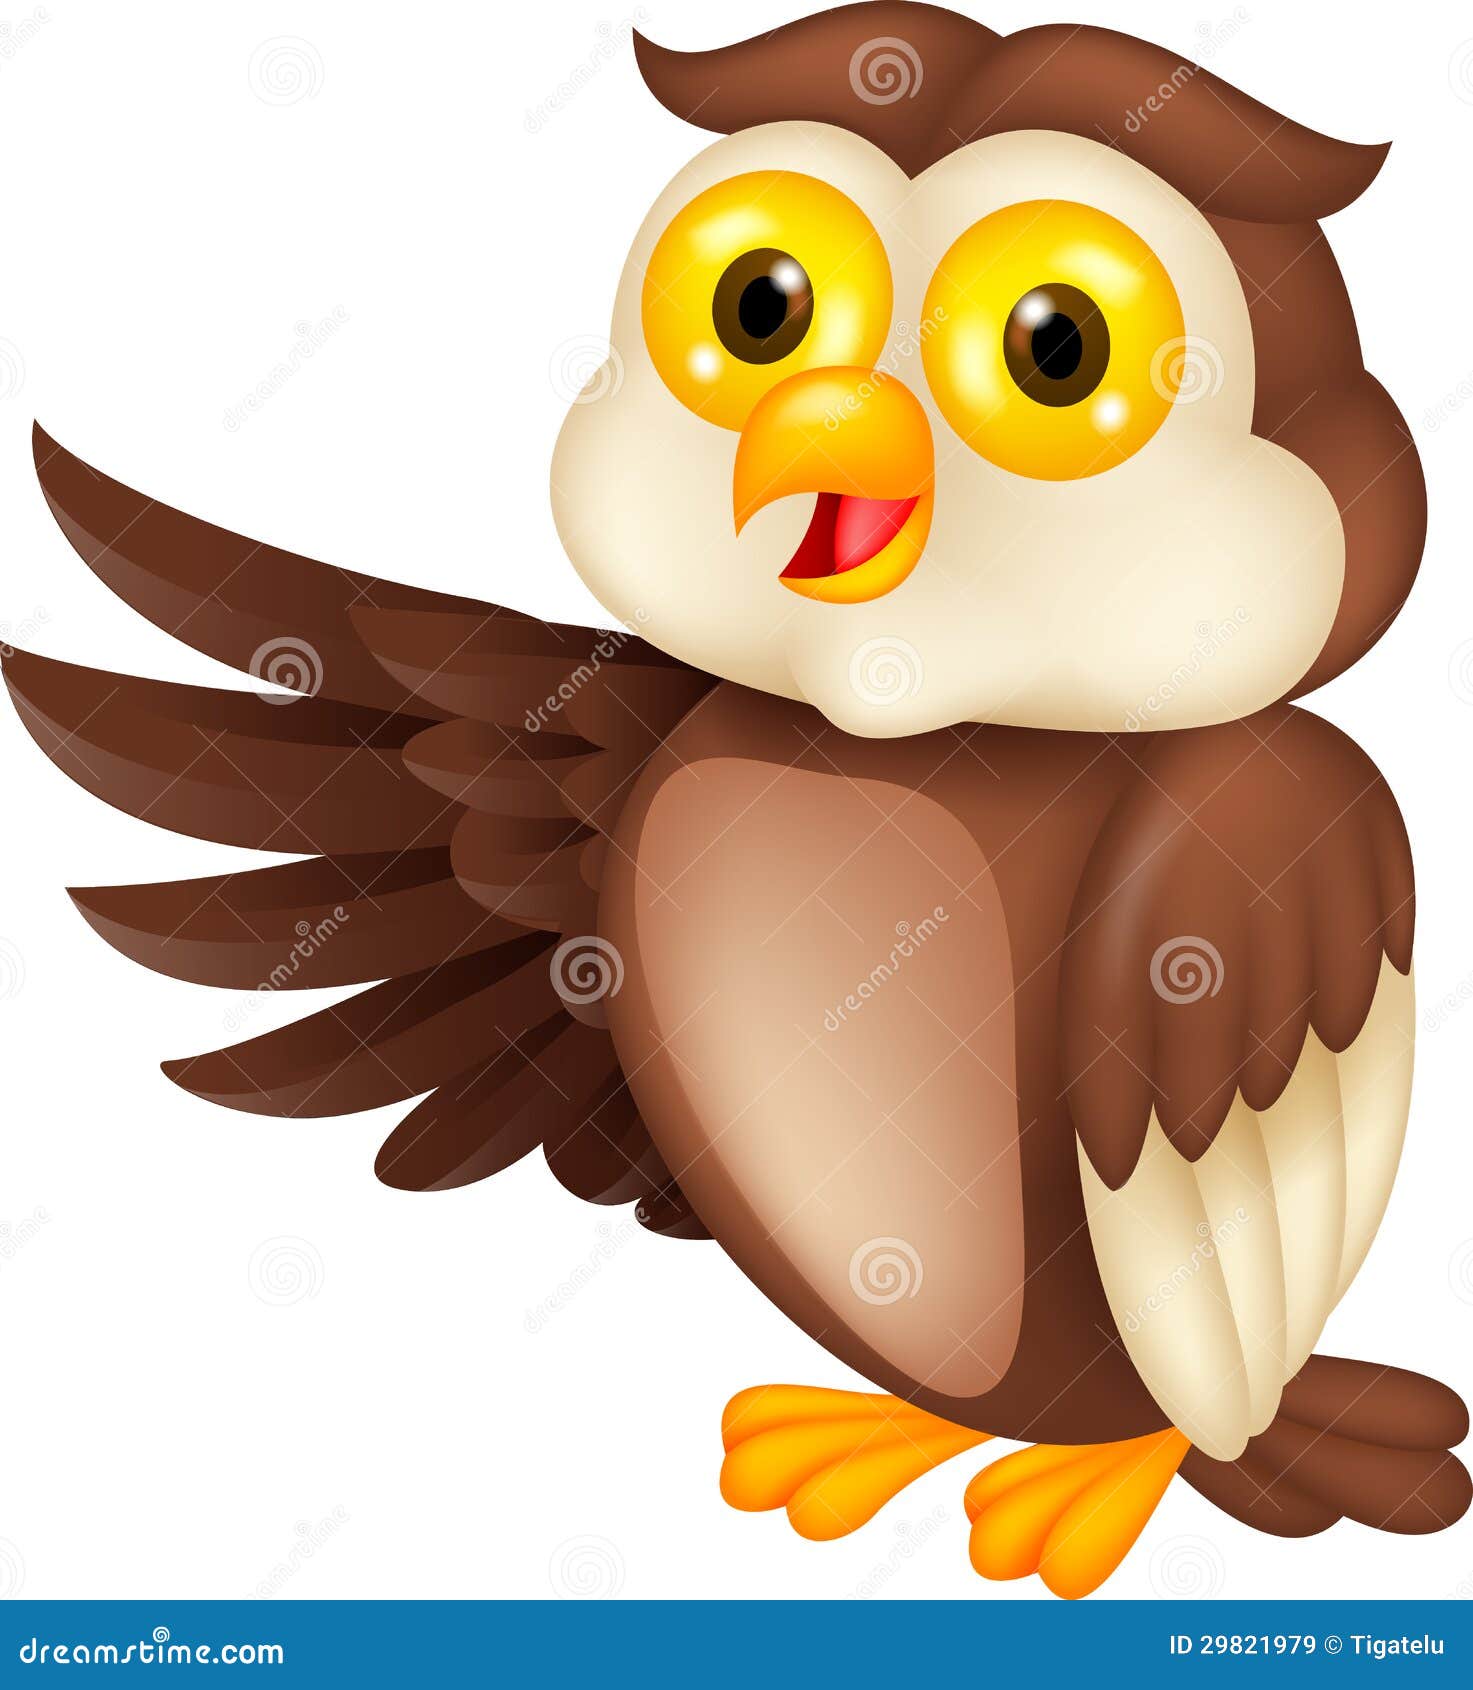 Funny owl cartoon waving stock vector. Illustration of bird - 29821979